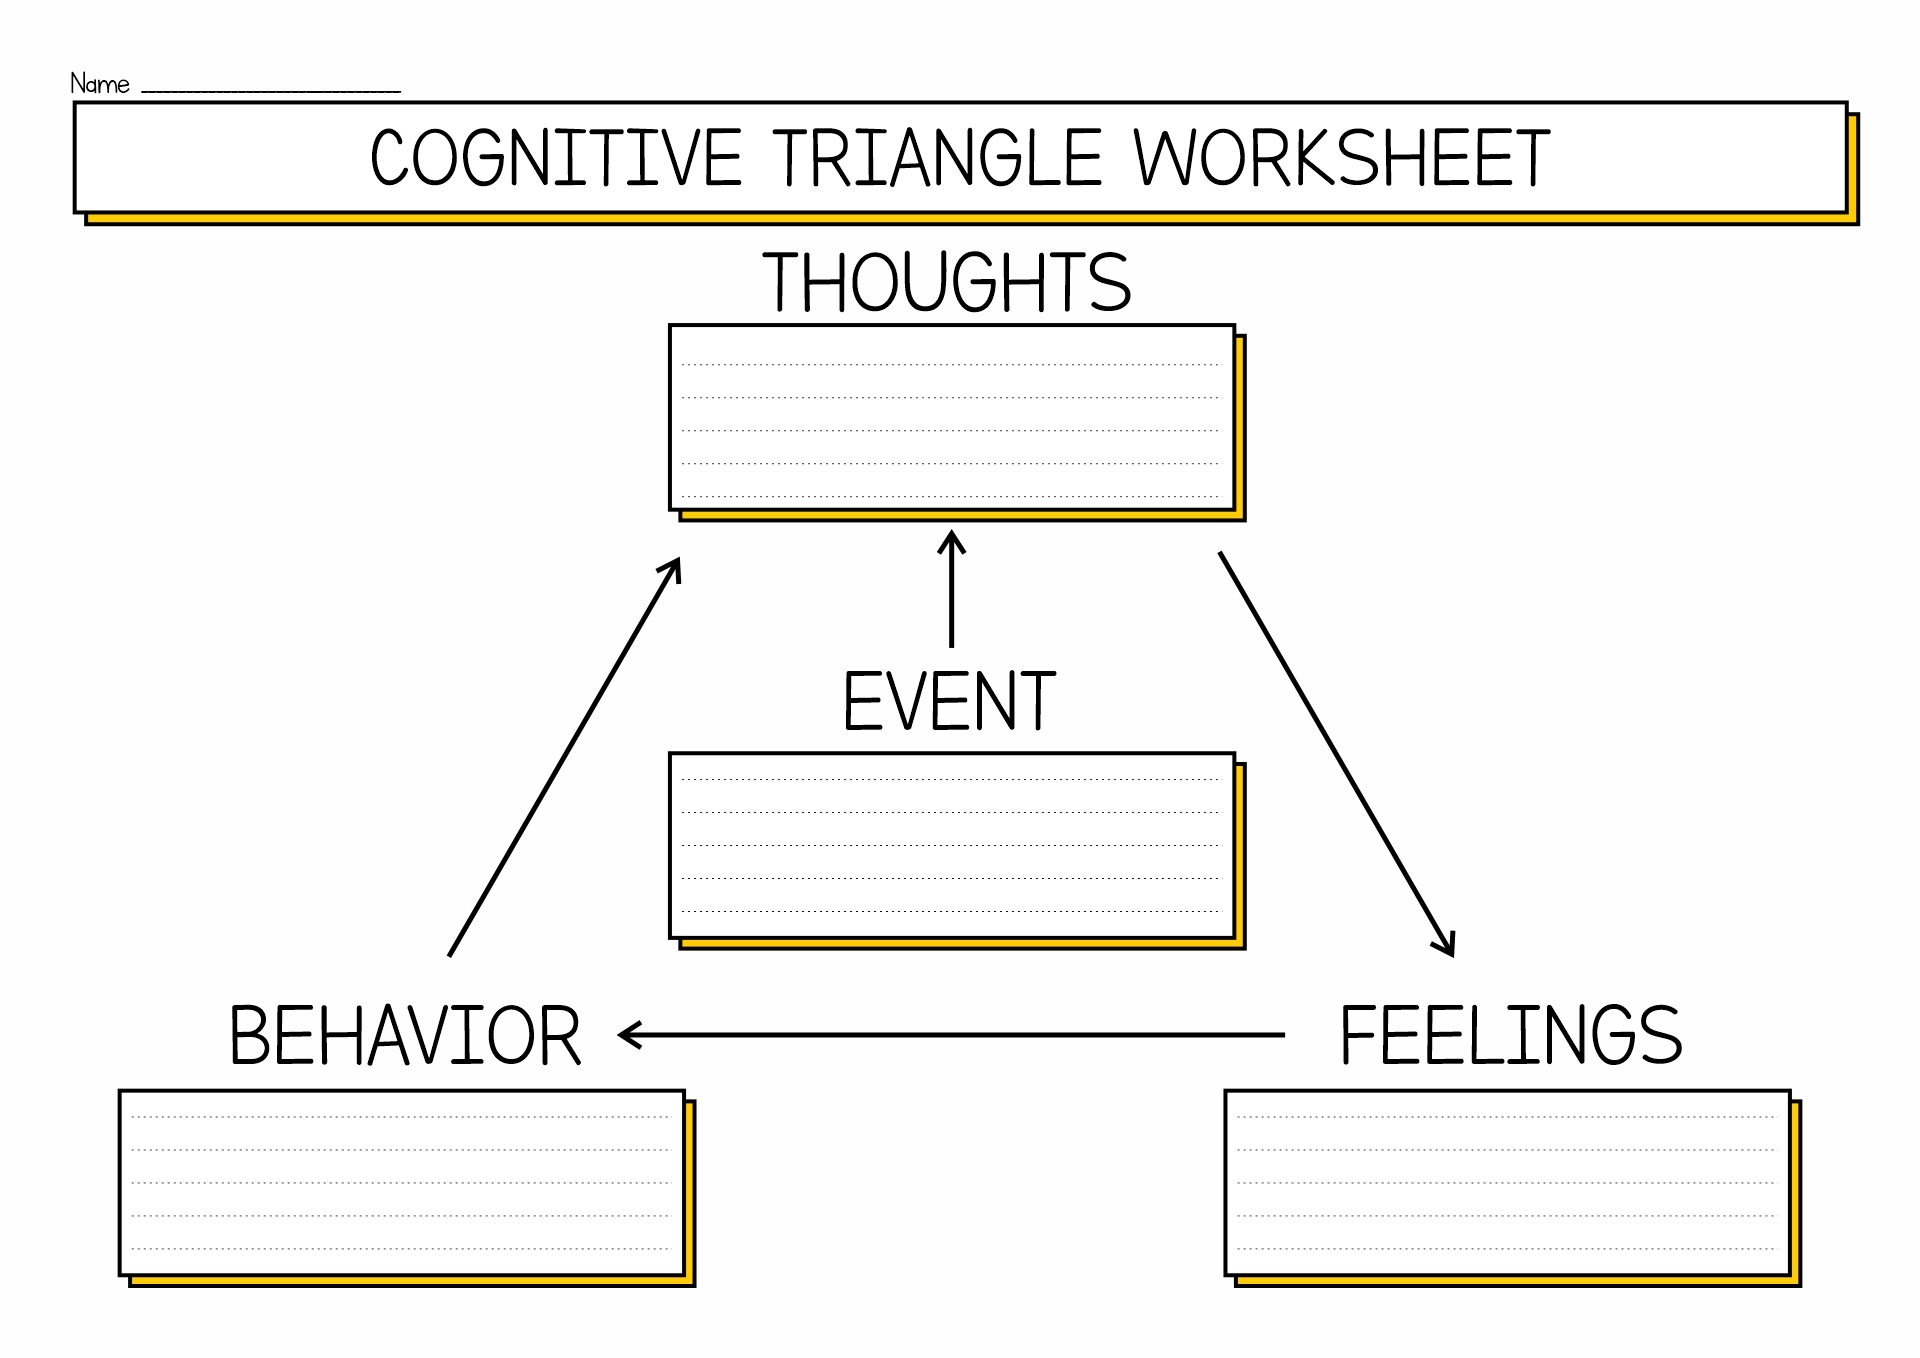 CBT Cognitive Triangle Worksheet